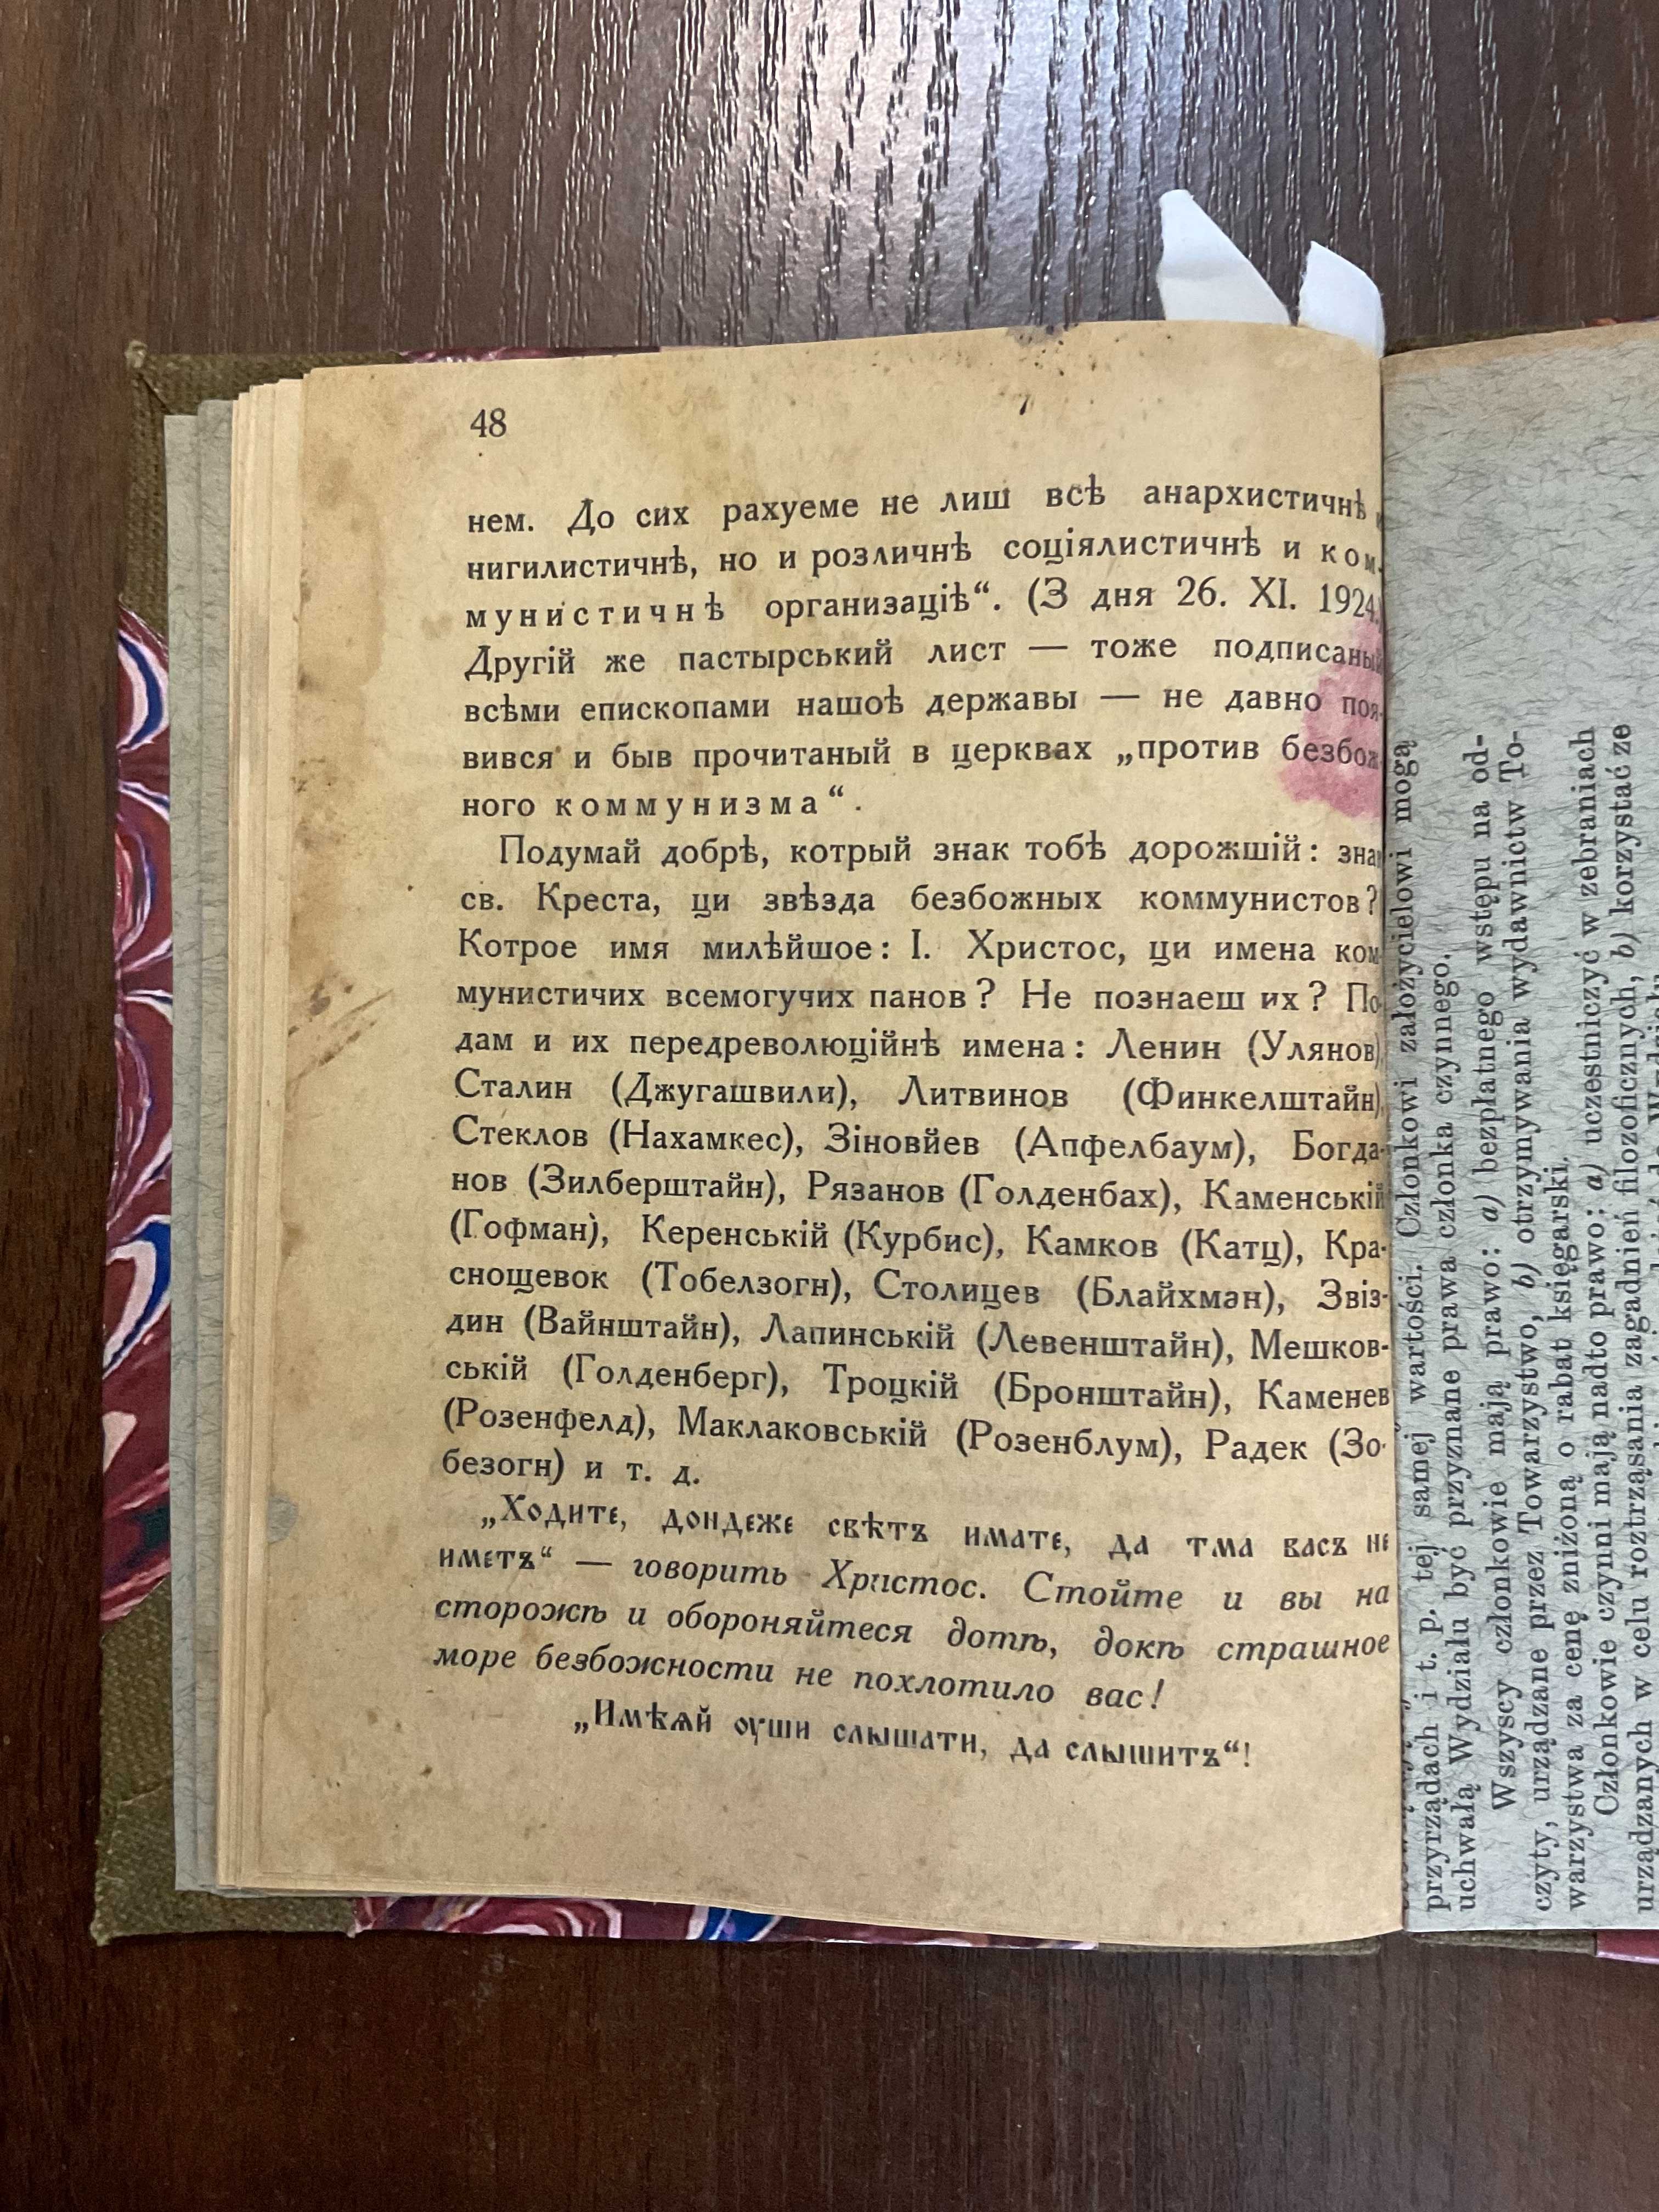 Ужгород 1937 Пекло на землі Іван Сторож